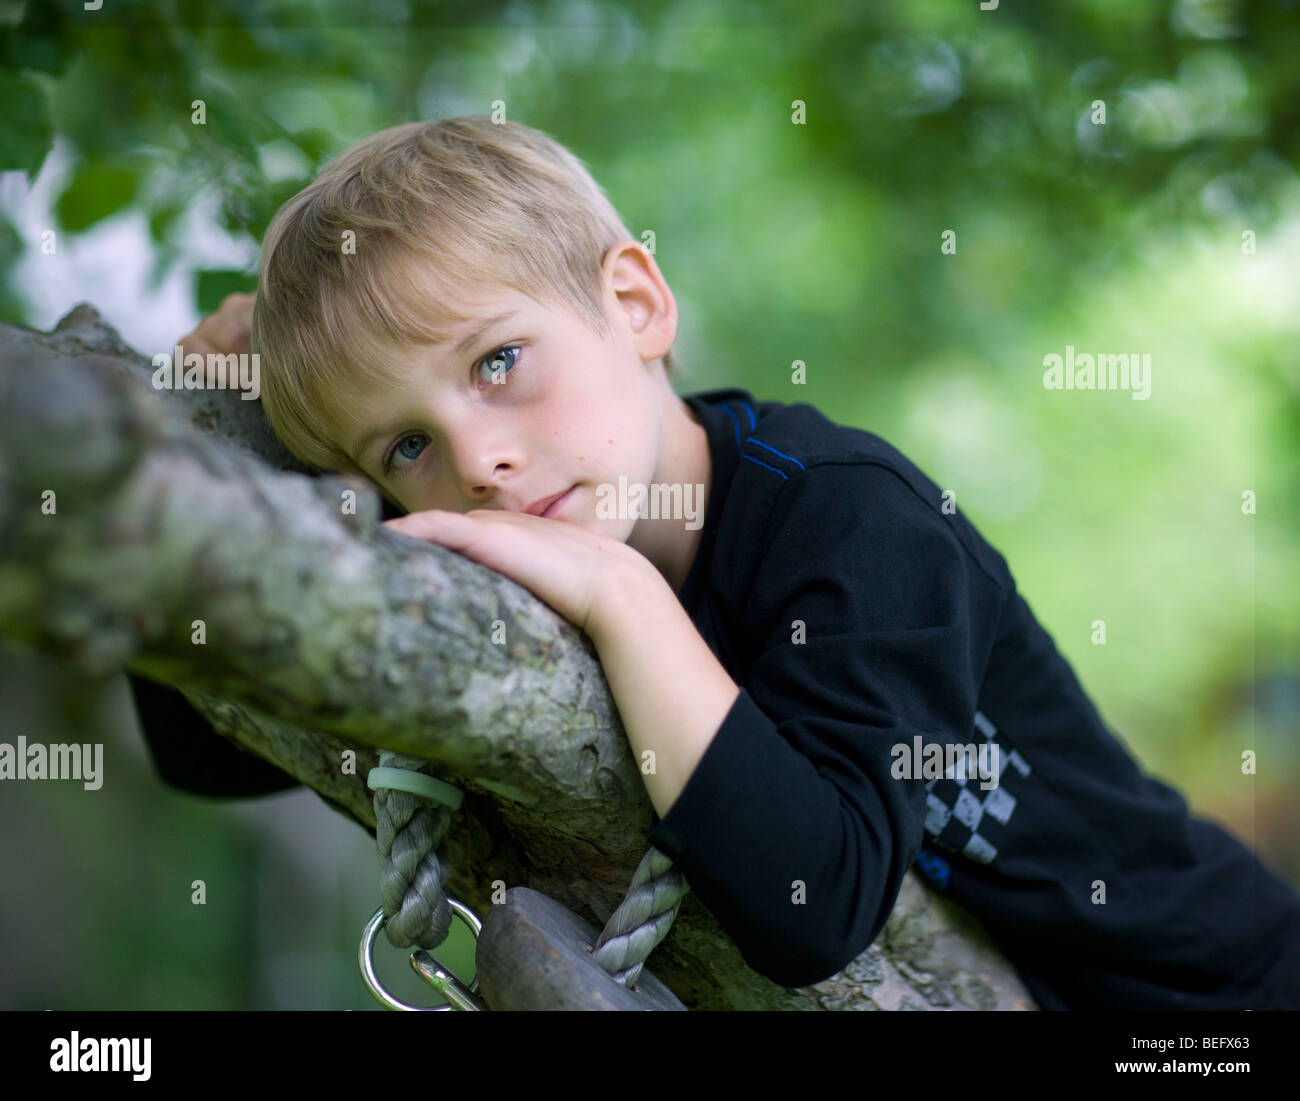 6 Jahre alter Junge auf einem Baum liegen Stockfotografie - Alamy